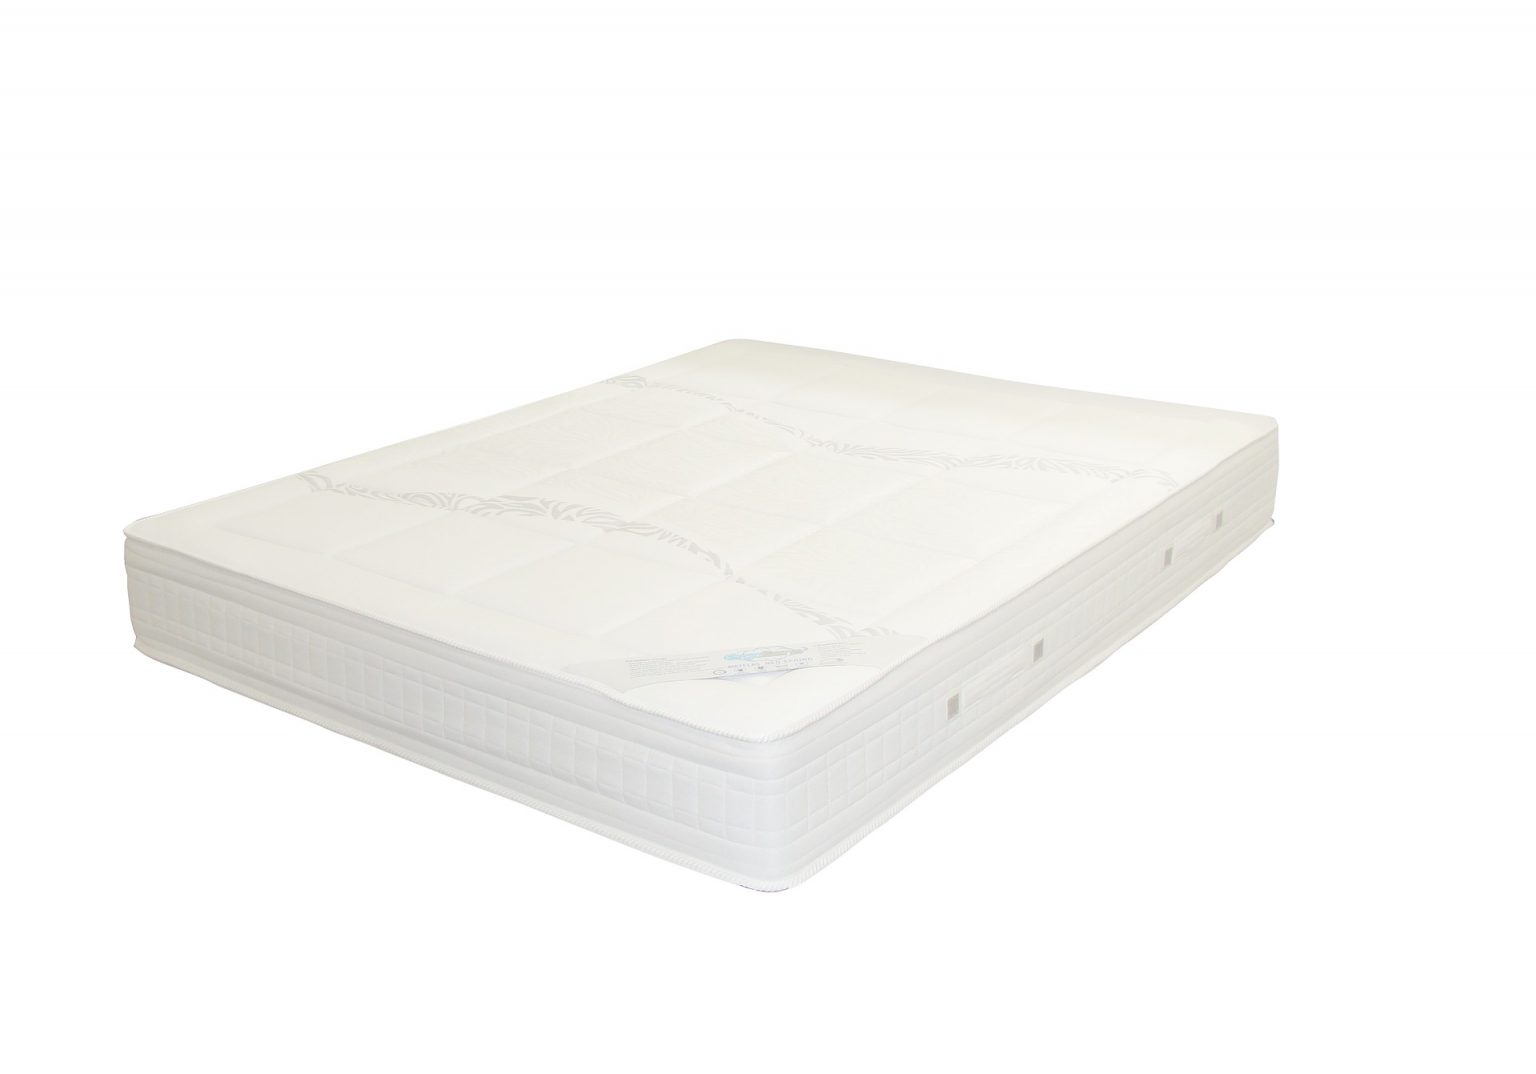 allan mattress manufacturer canada